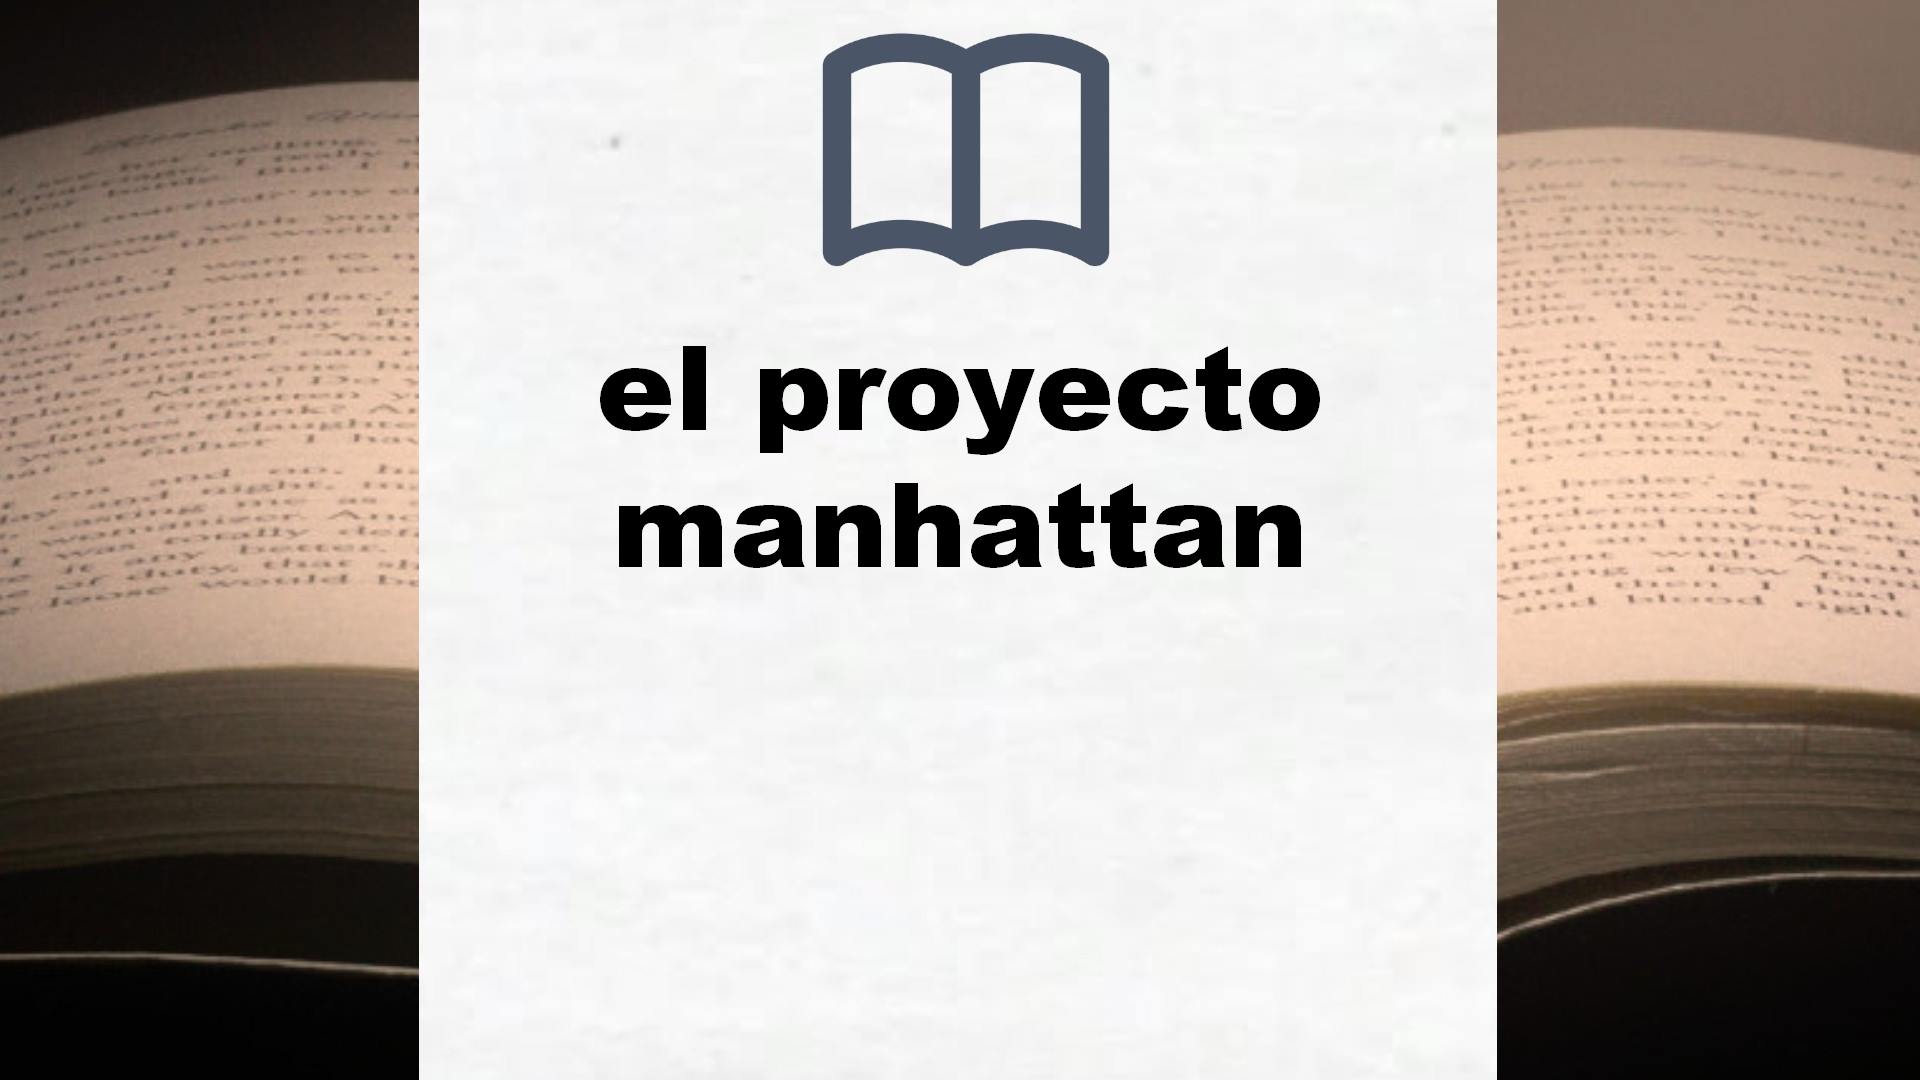 Libros sobre el proyecto manhattan